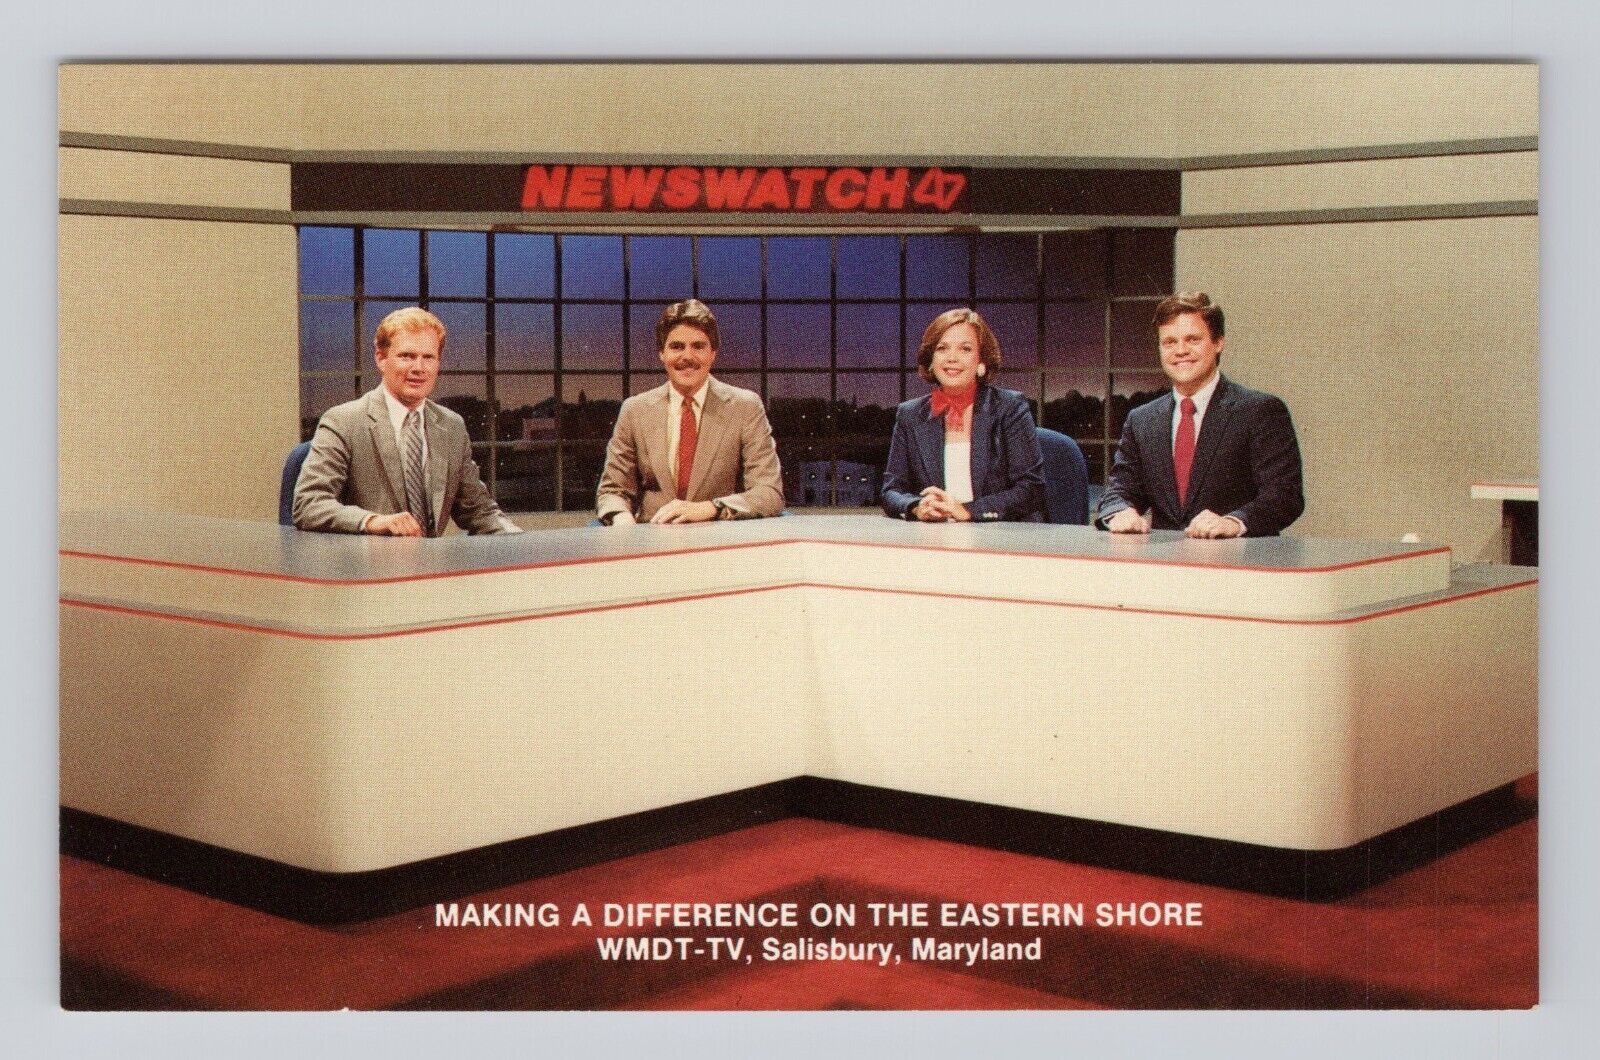 Postcard Newswatch TV Anchors WMDT-TV Salisbury Maryland Karen Adams News desk